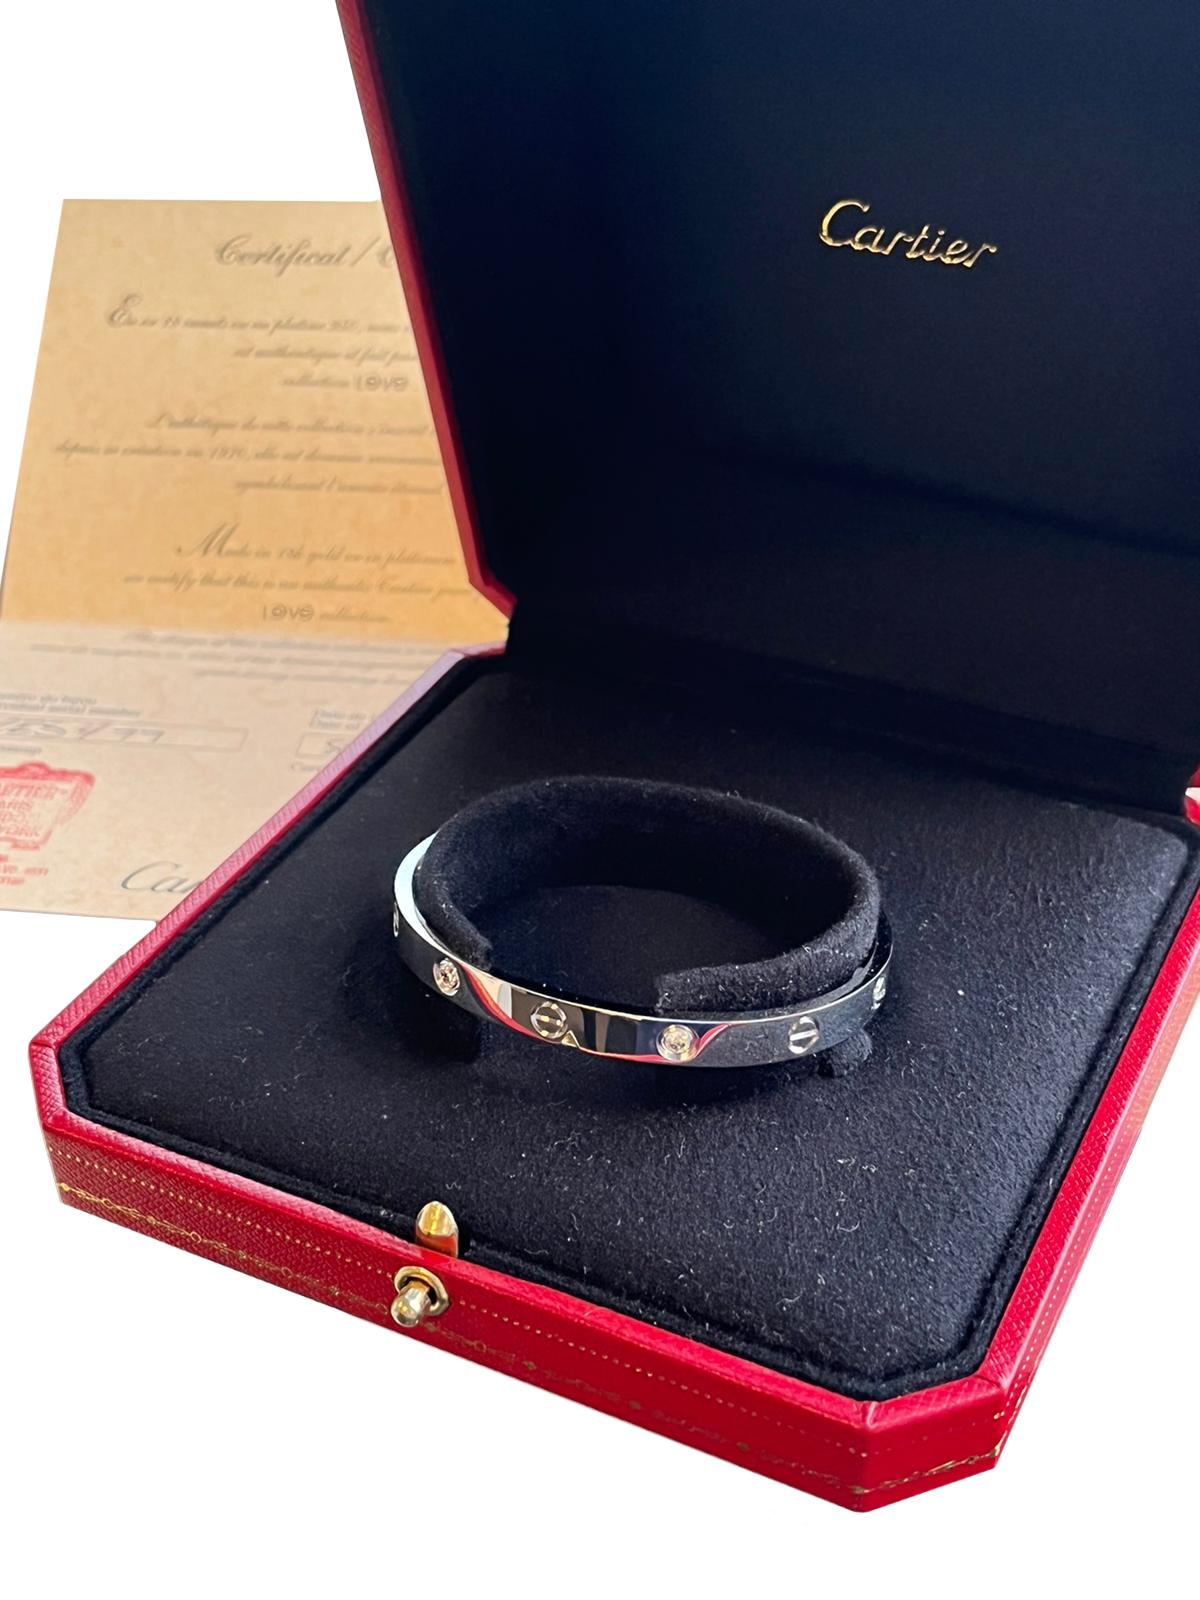 Brilliant Cut Cartier Love Bracelet 0.42ct 4 Diamonds Brilliant-Cut Size 17 White Gold For Sale